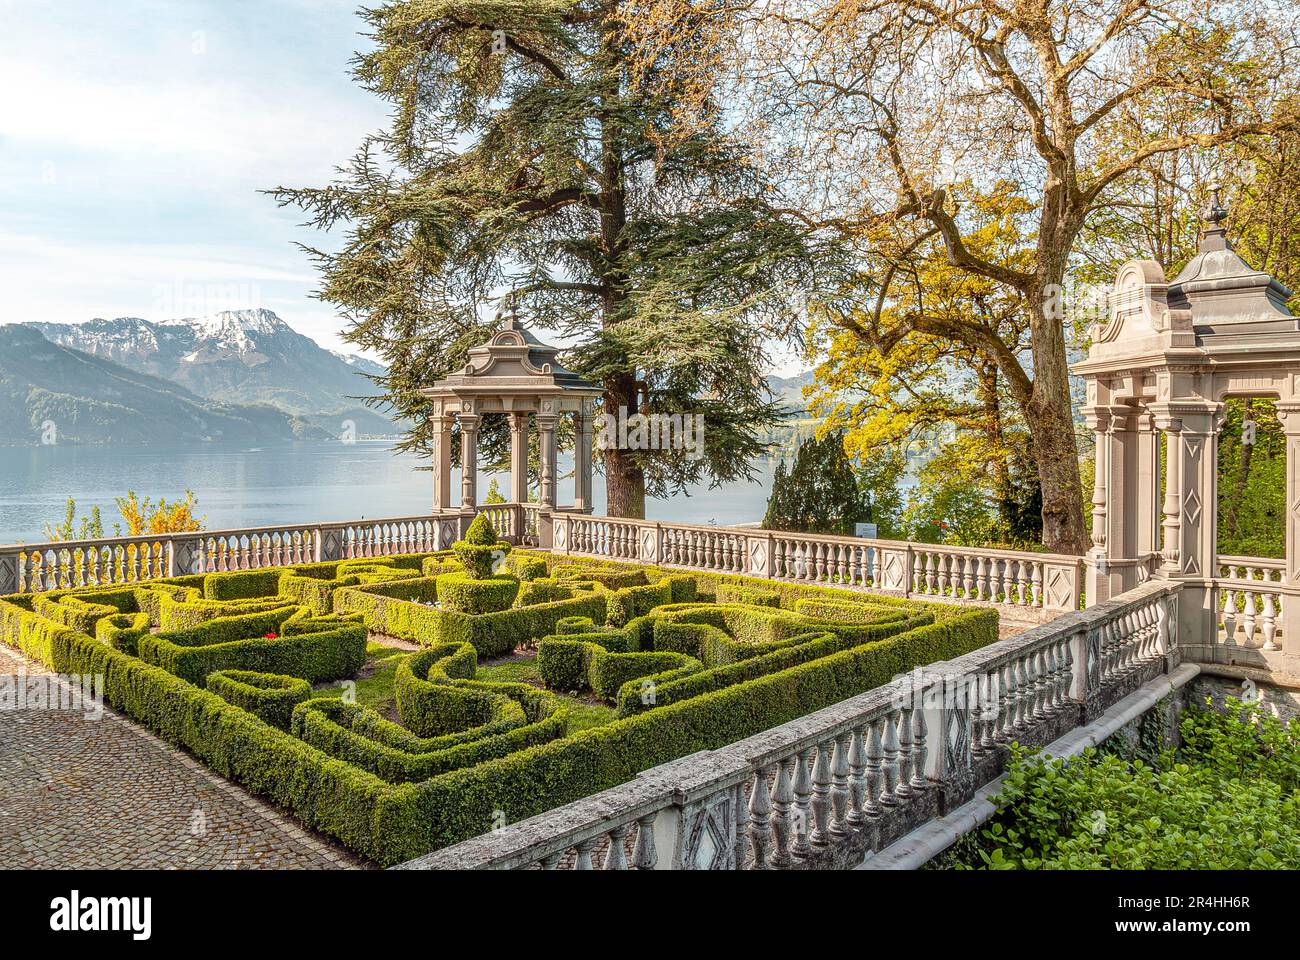 Baroque Garden at Schloss Meggen, a  castle overlooking Lake Lucerne at the Meggenhorn near Lucerne, Switzerland Stock Photo